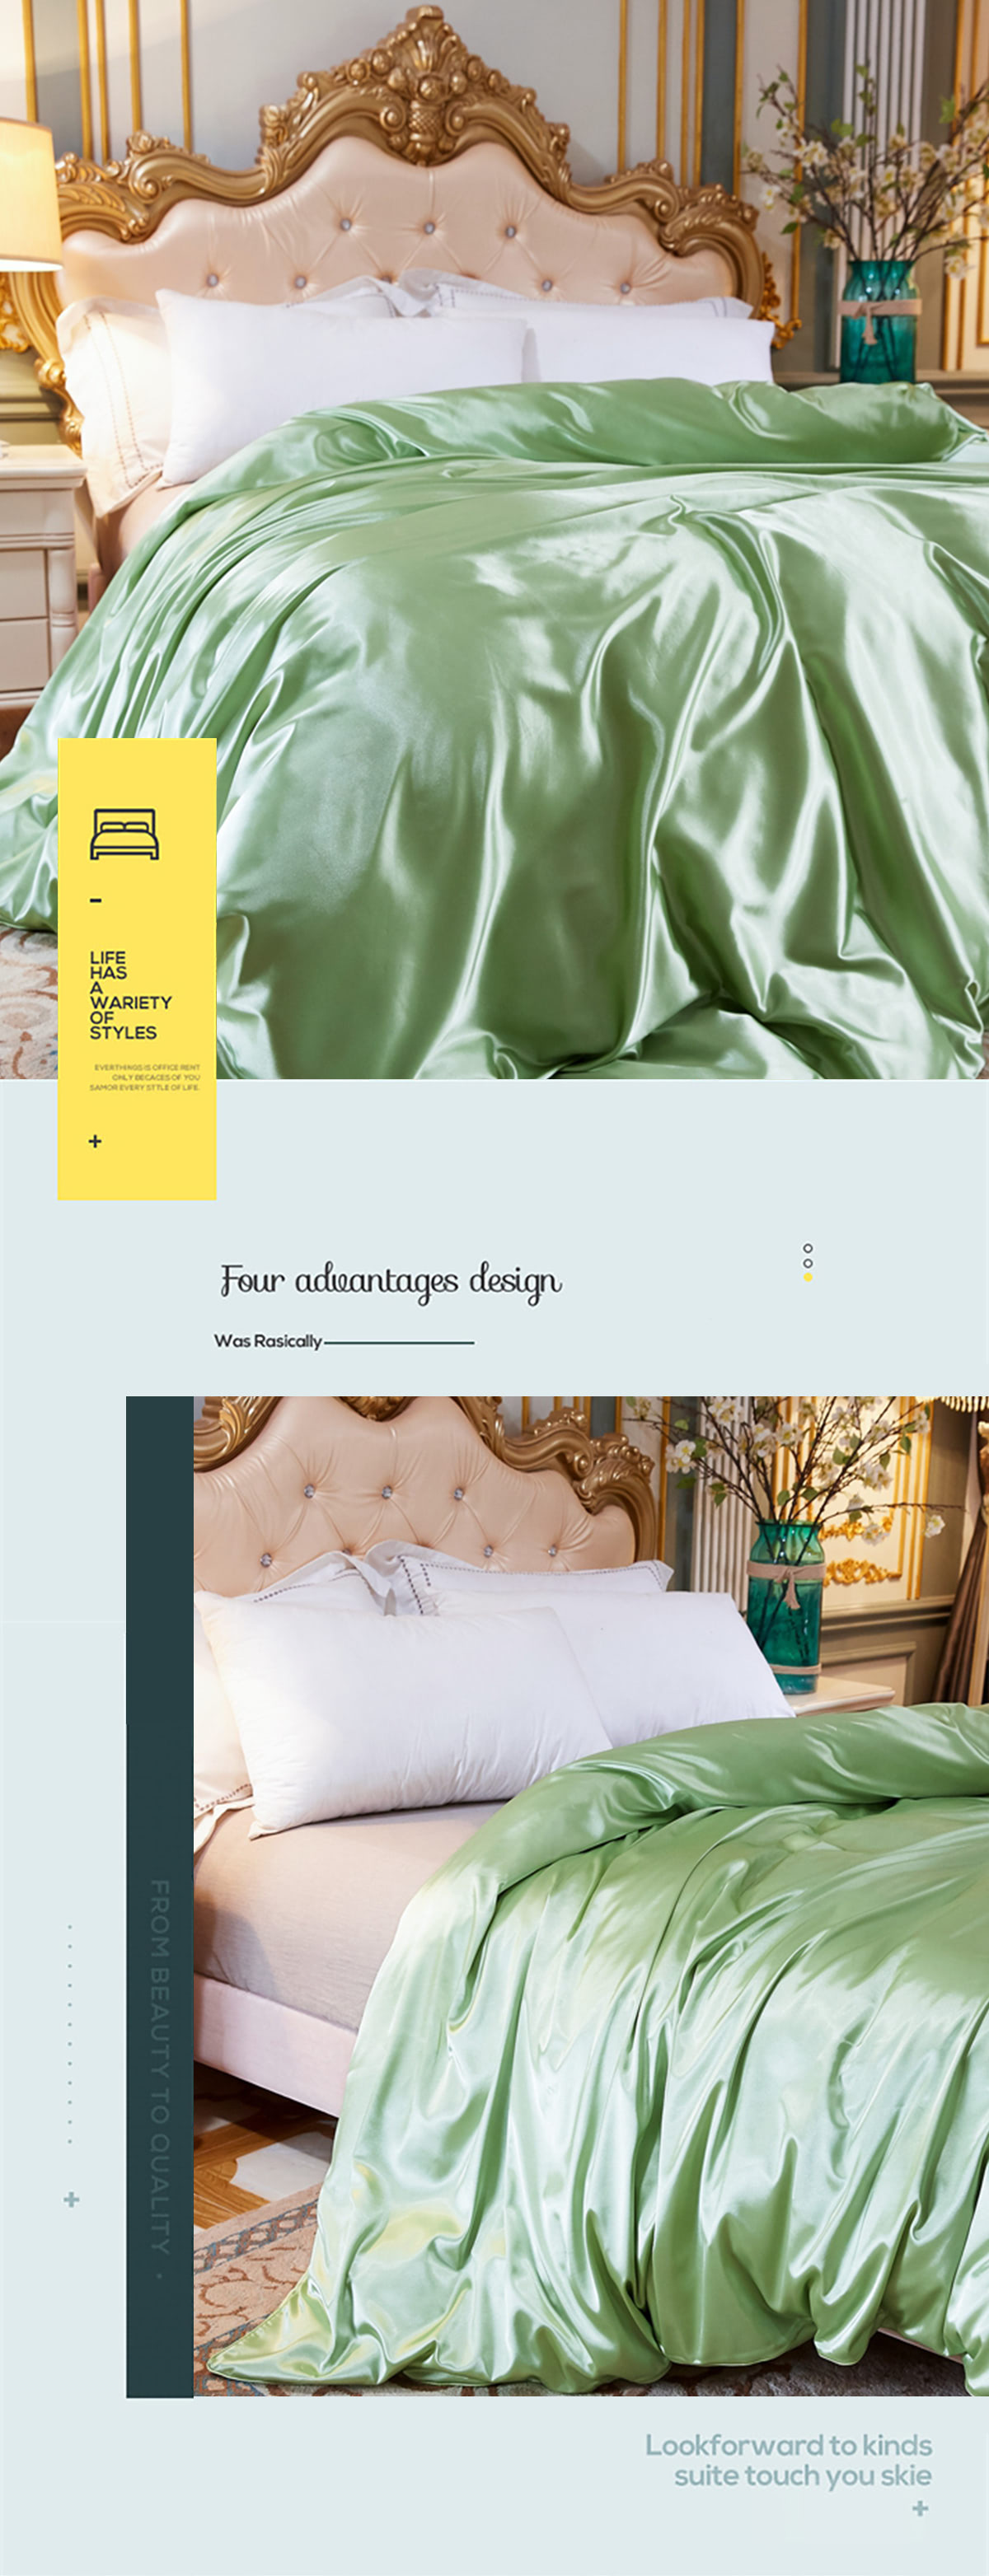 Ultra-Soft-Silky-Satin-Bedding-Linen-Duvet-Cover-4-Pcs-Set24.jpg